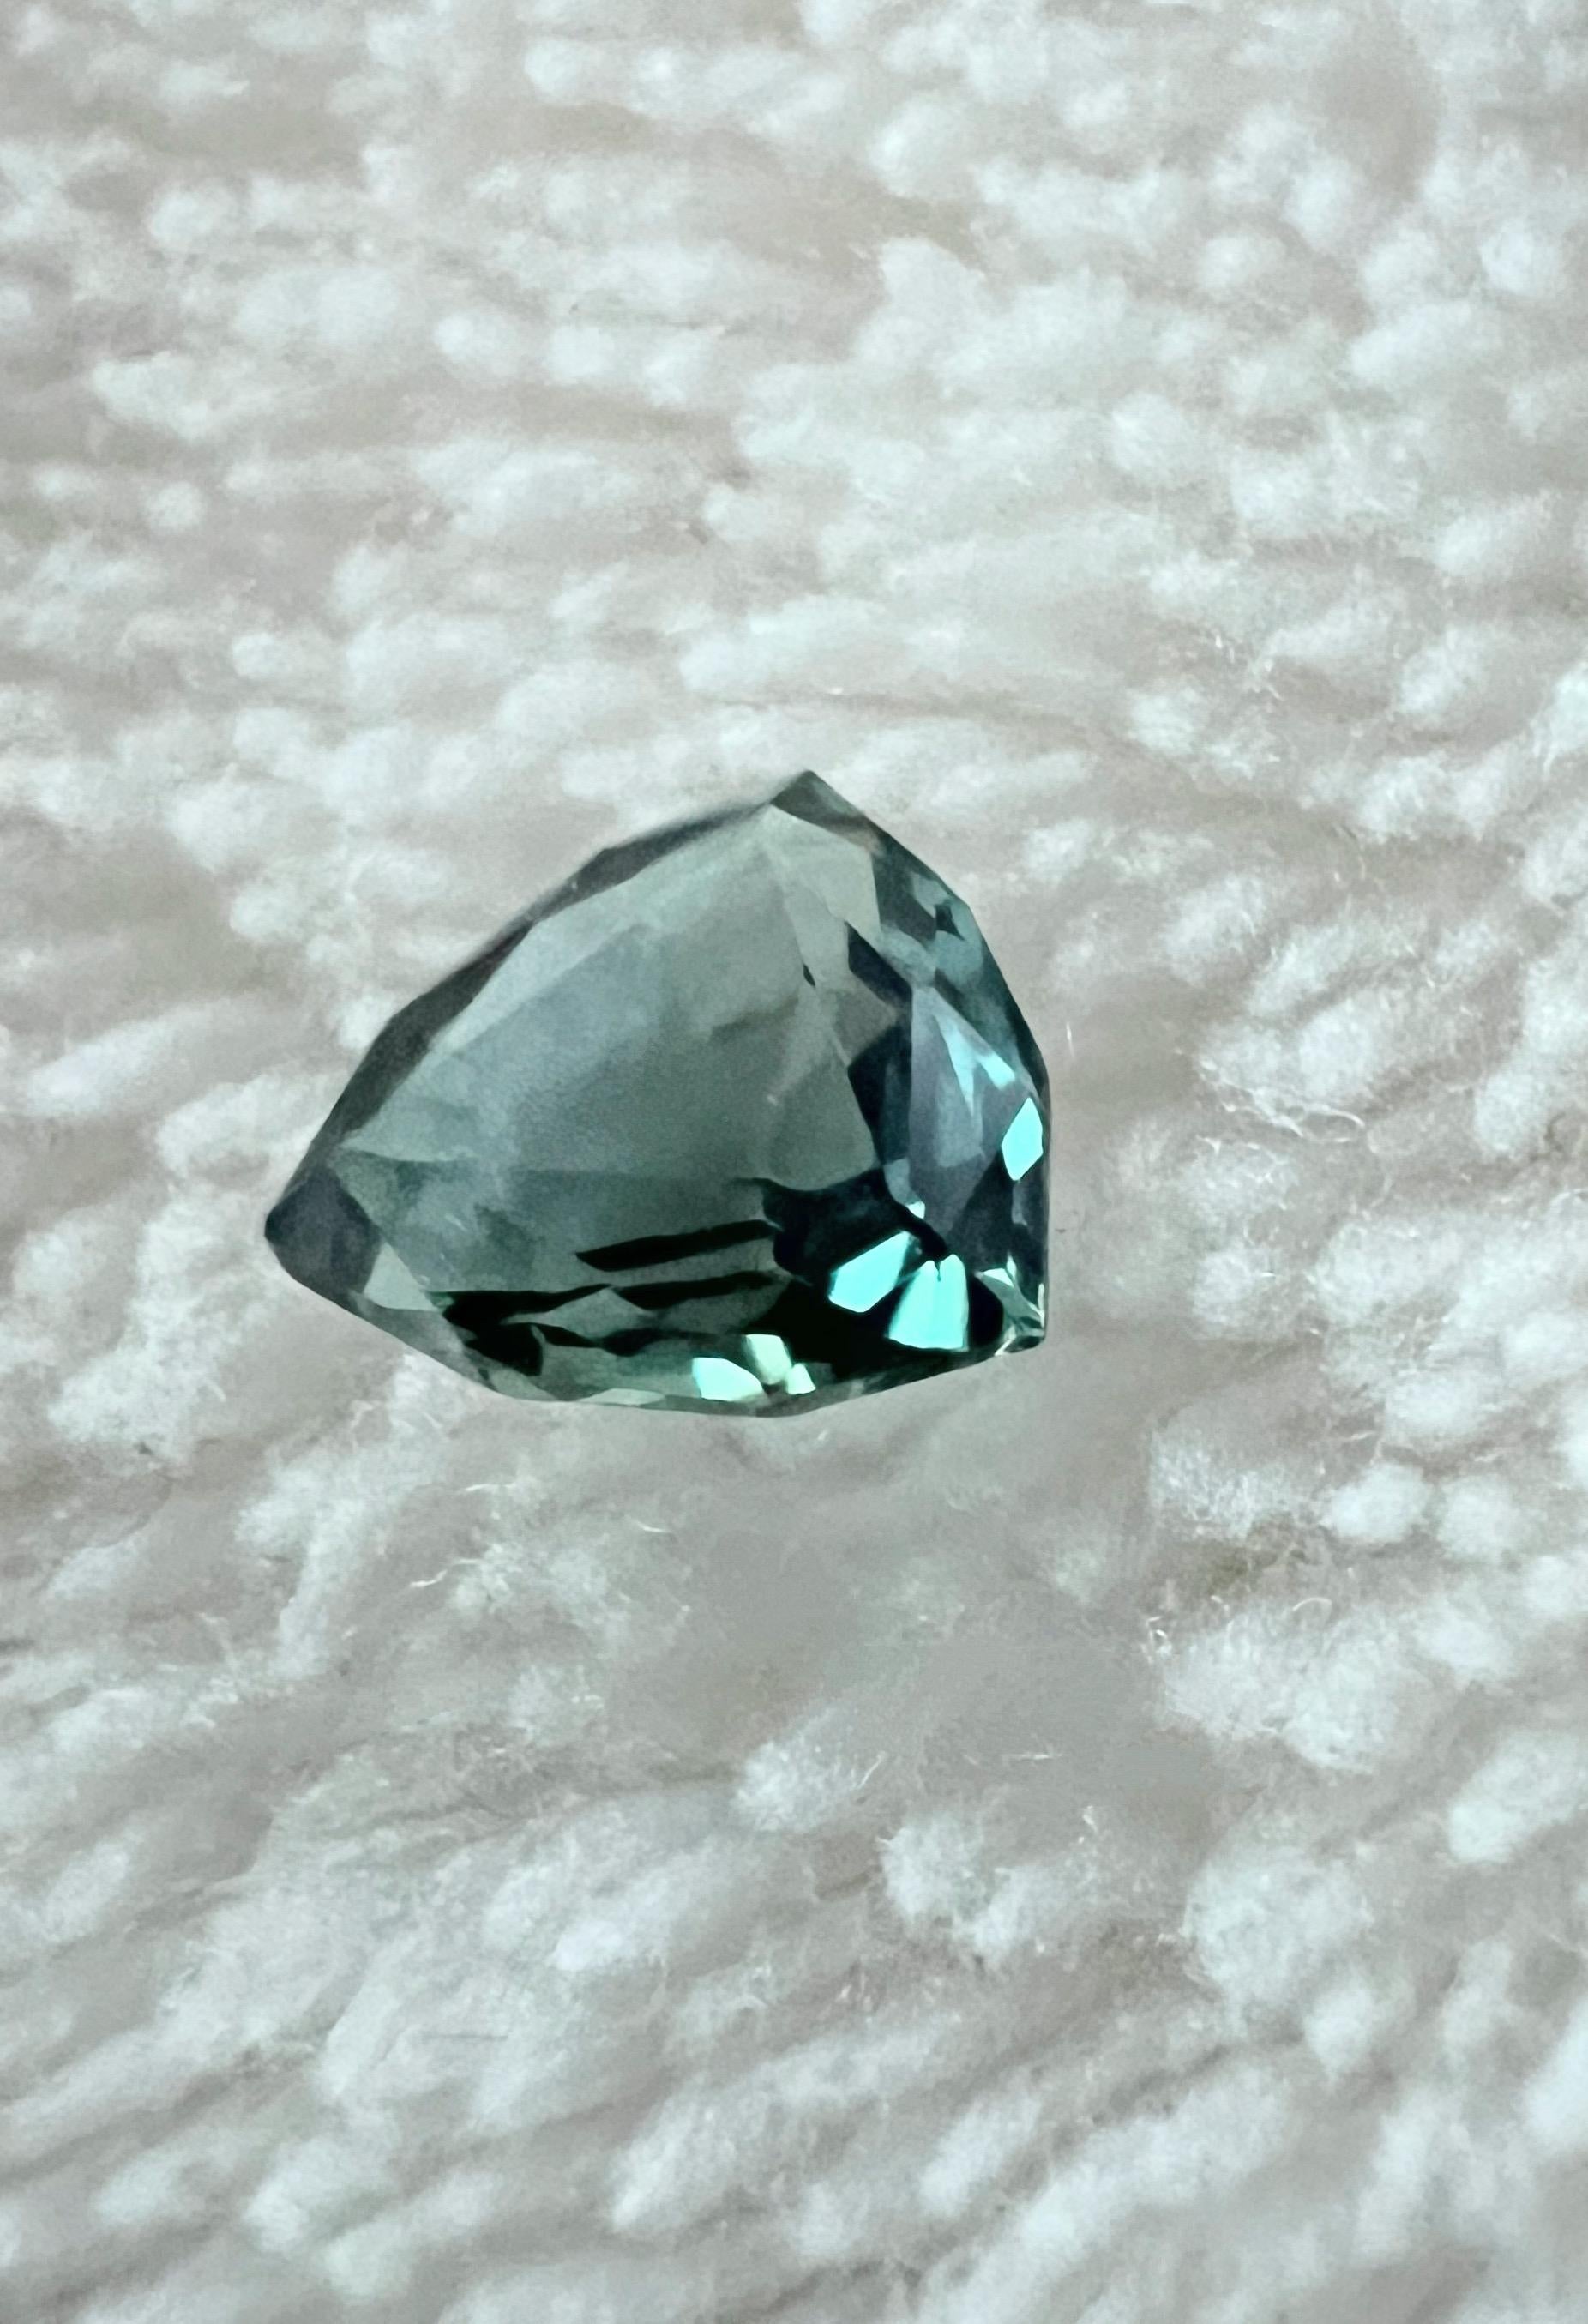 Die bezaubernde Anziehungskraft unseres 0,5-karätigen Teal Blue Sapphire im Billionen-Schliff. Dieser LOUPE CLEAN Edelstein ist eine Symphonie aus Raffinesse und Farbe, die mit ihrem einzigartigen Charme die Herzen erobern wird.

Wesentliche